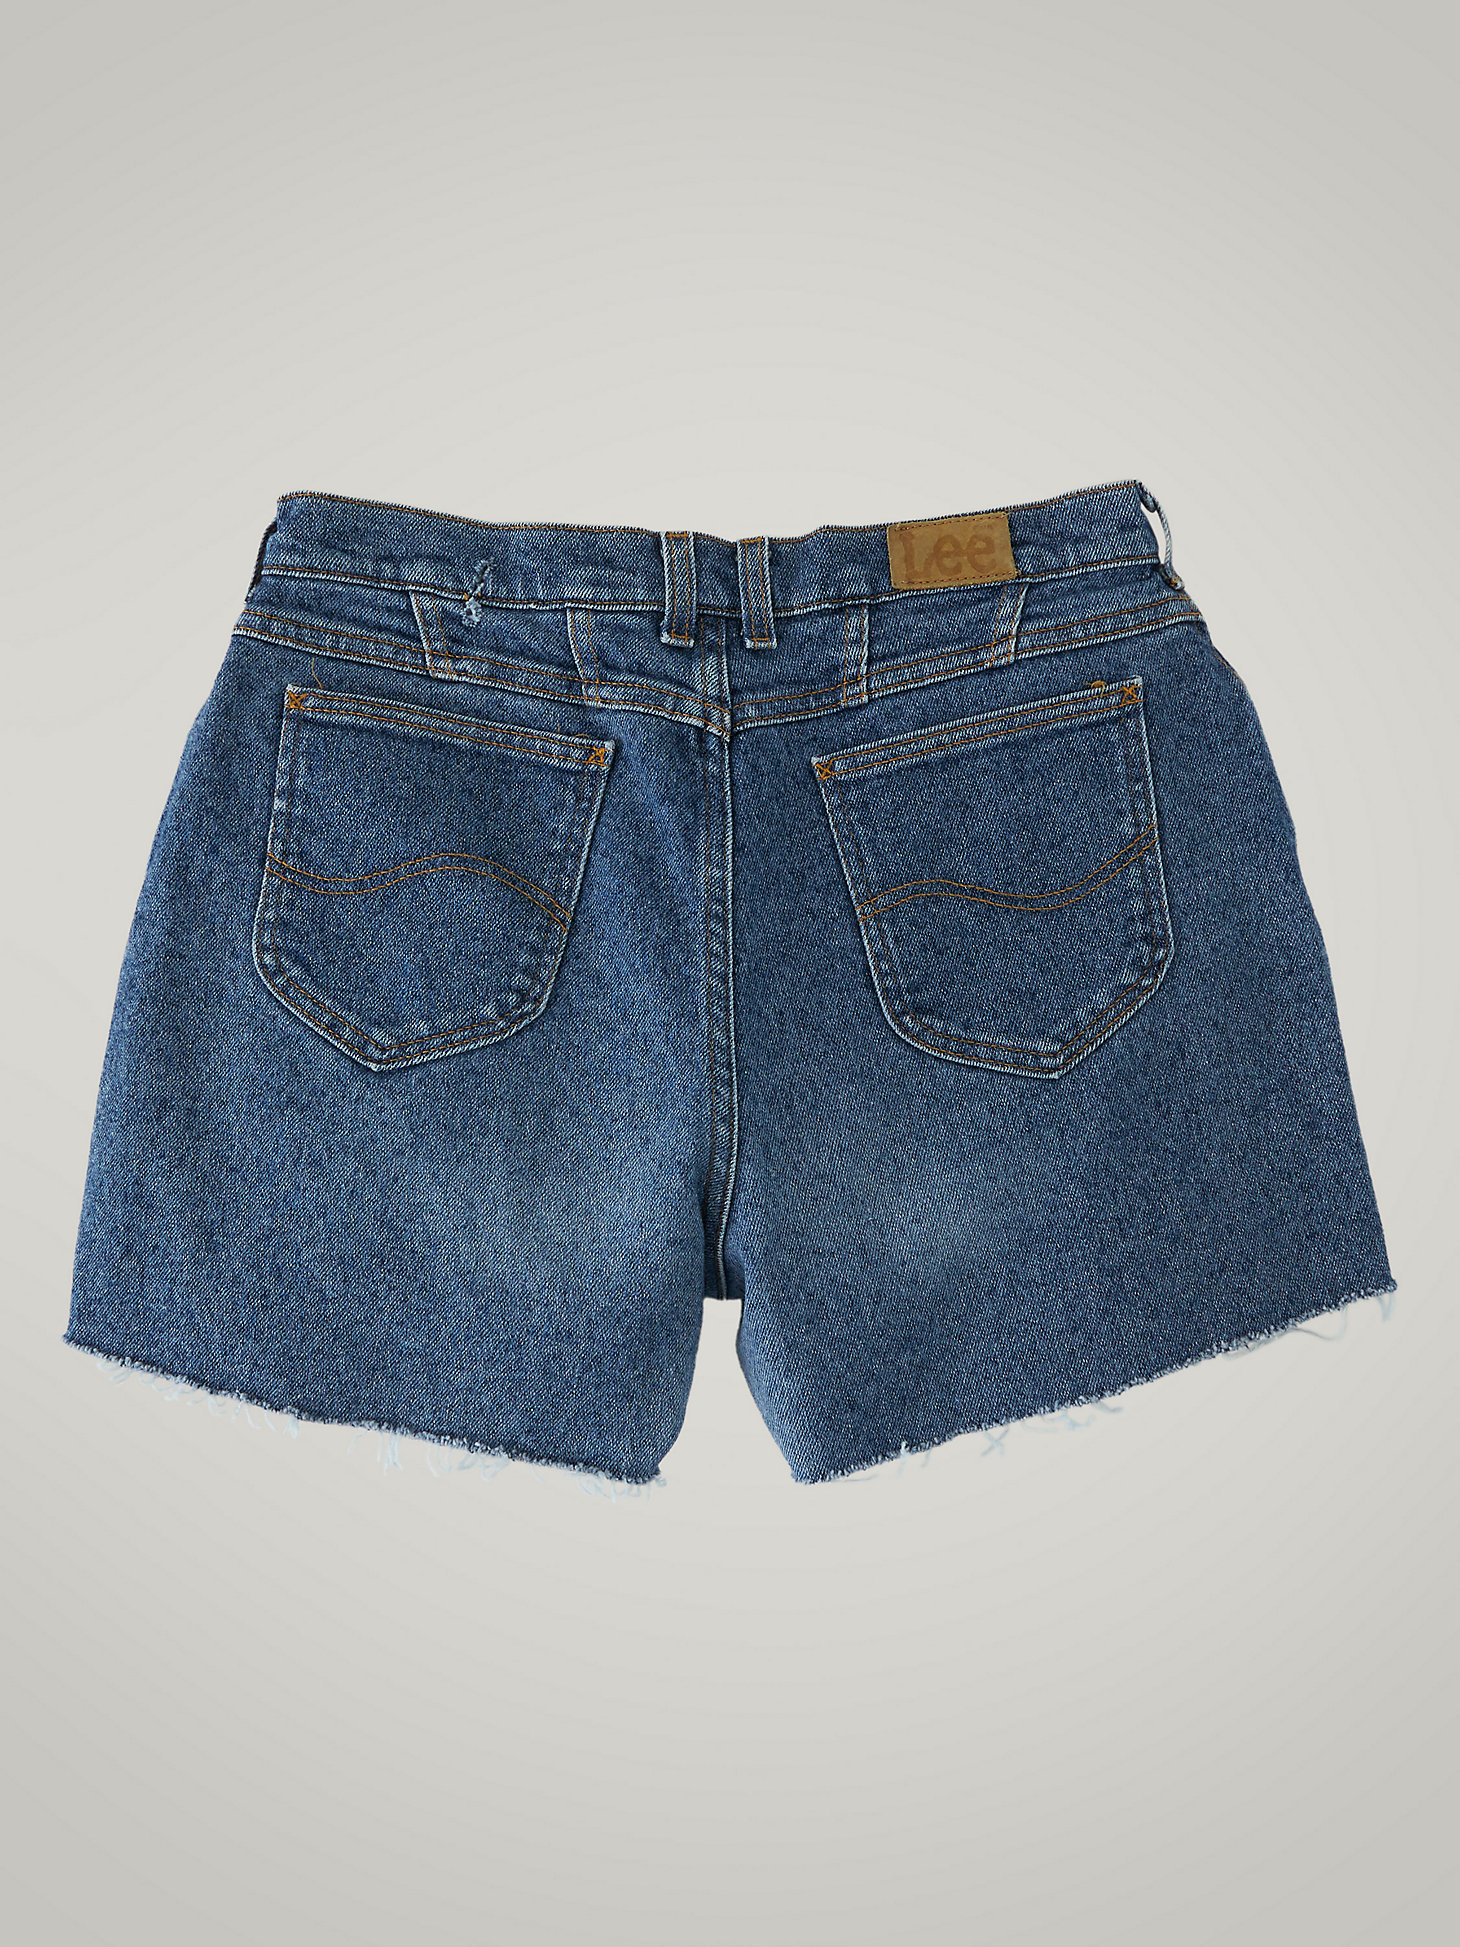 Women's Vintage Cut-Off Shorts WS33 (Size 32) in Medium Denim alternative view 1